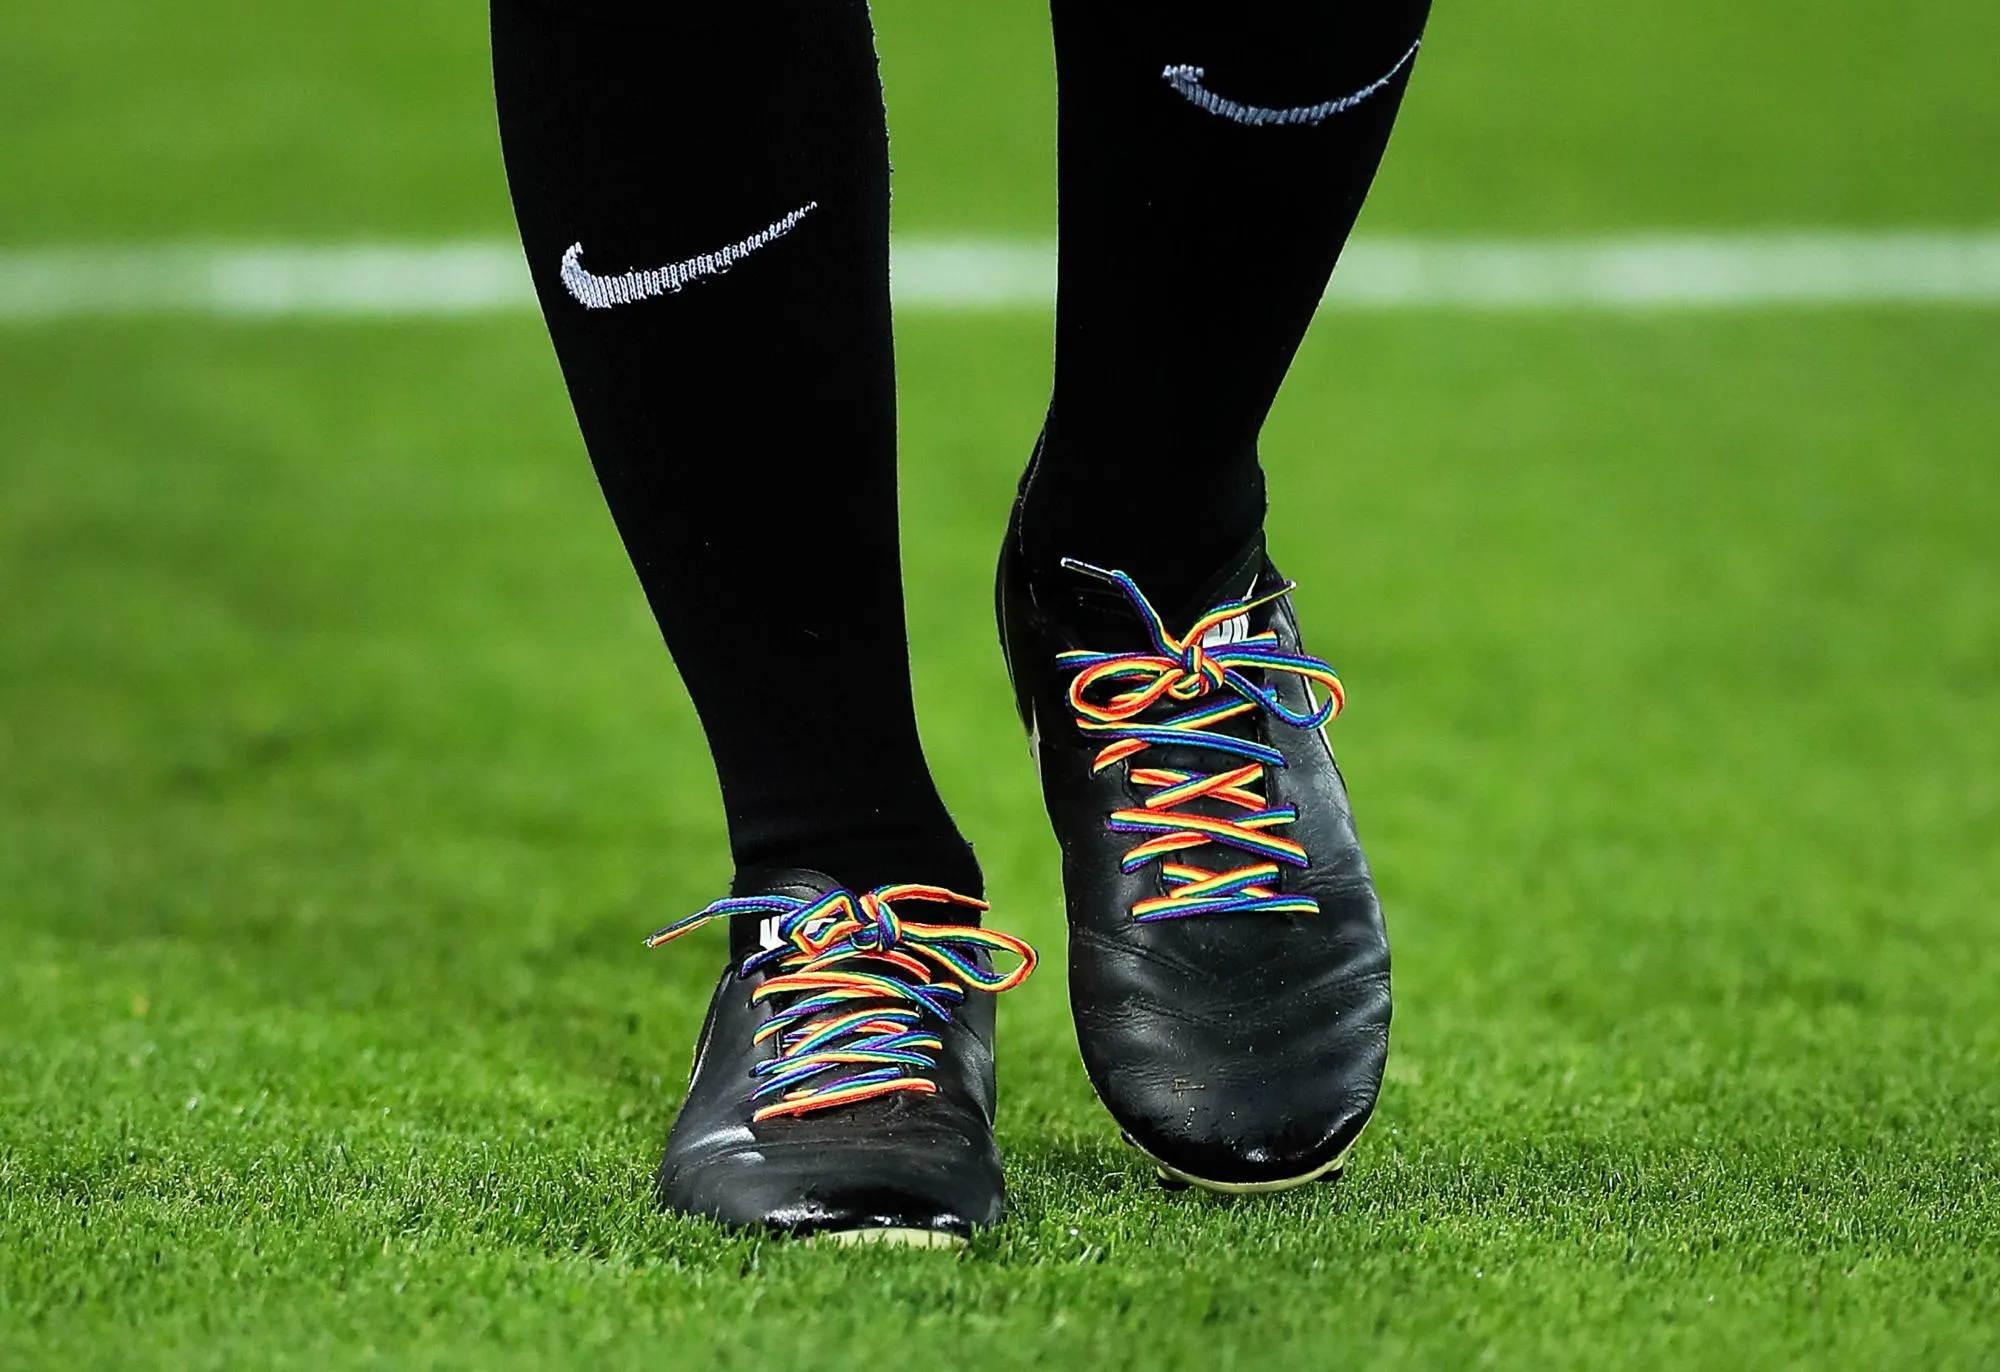 Une D6 anglaise joue un match en maillot aux couleurs LGBT